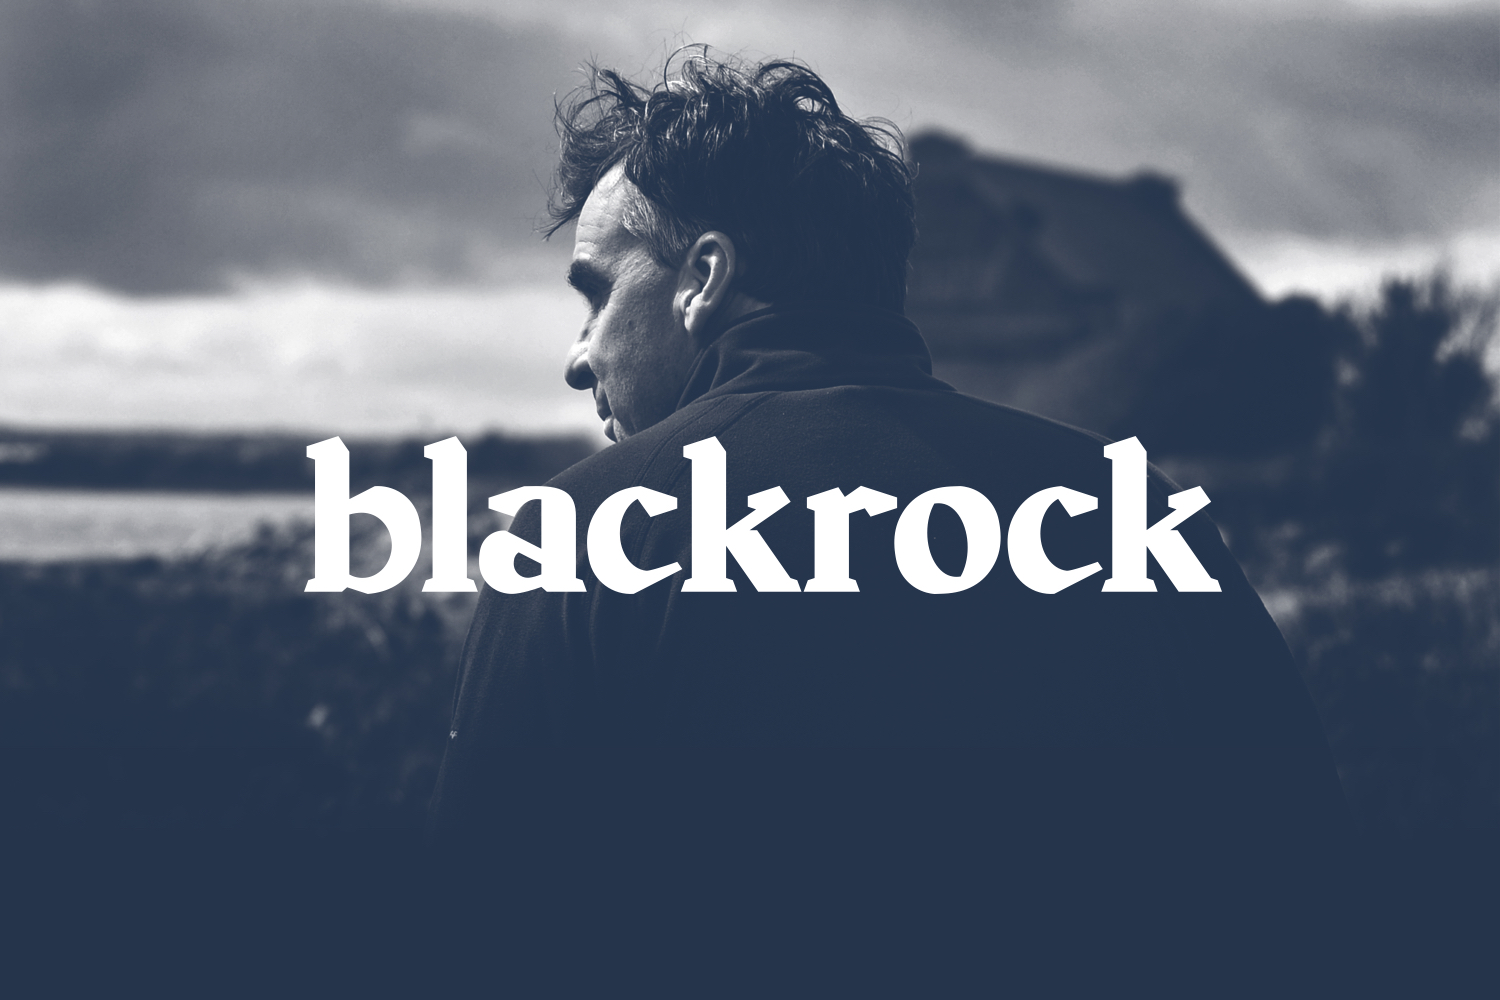 Cover image: Blackrock